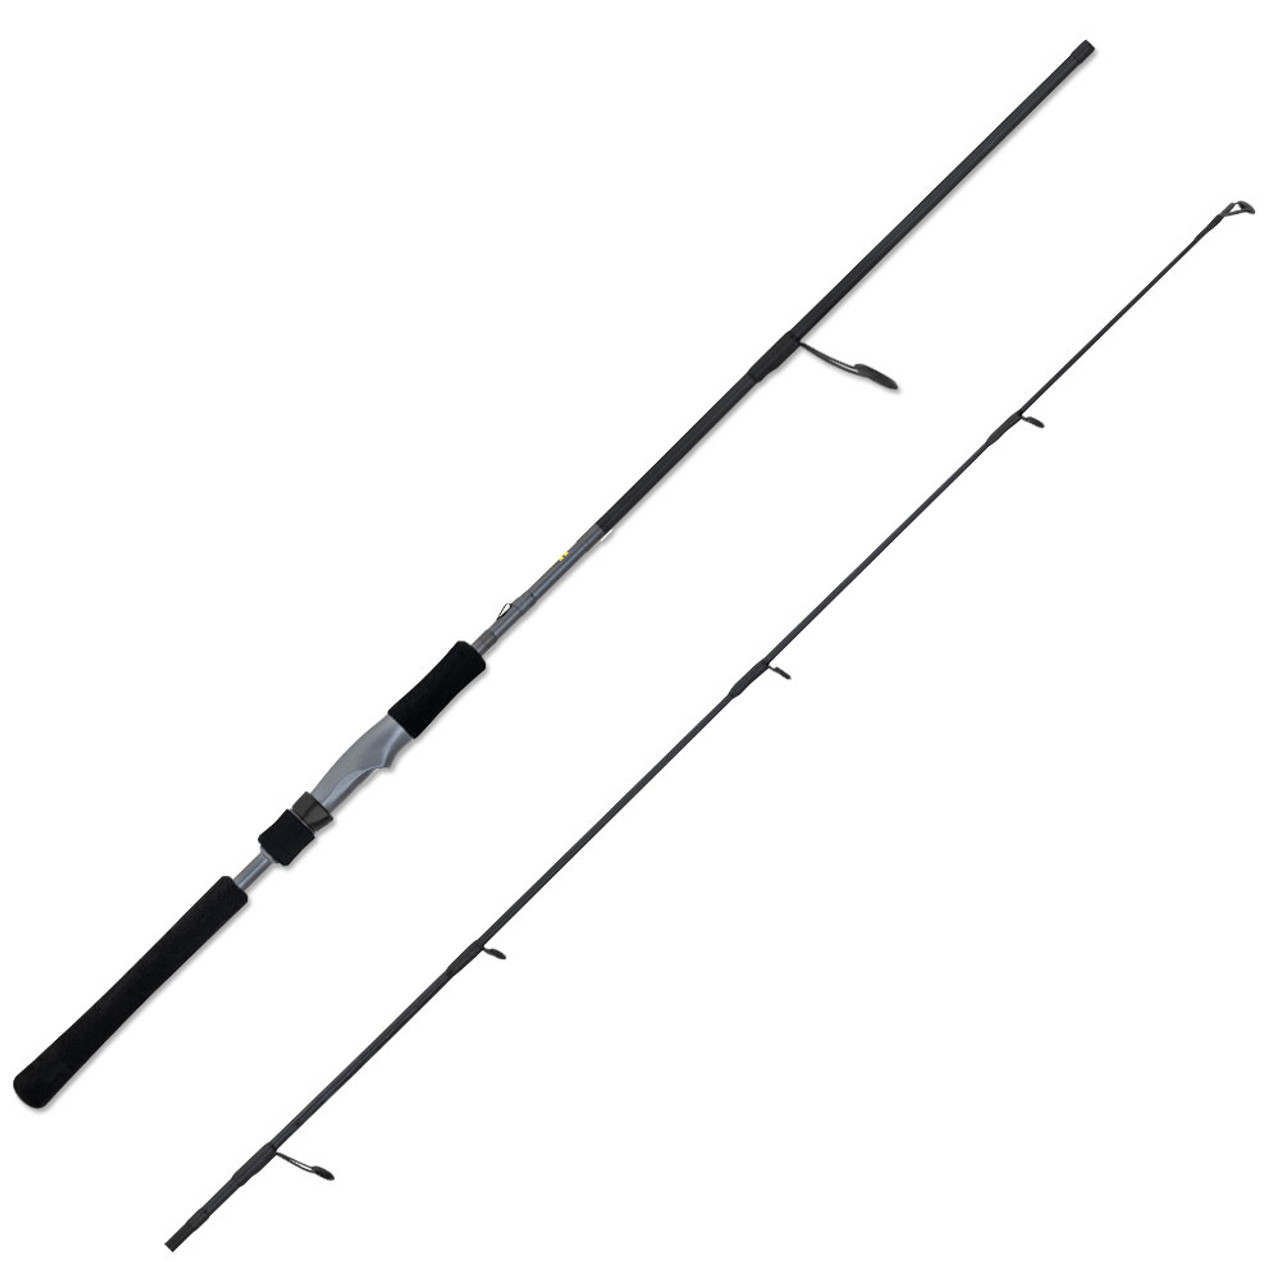 Daiwa TD Hyper Fishing Rod For Sale